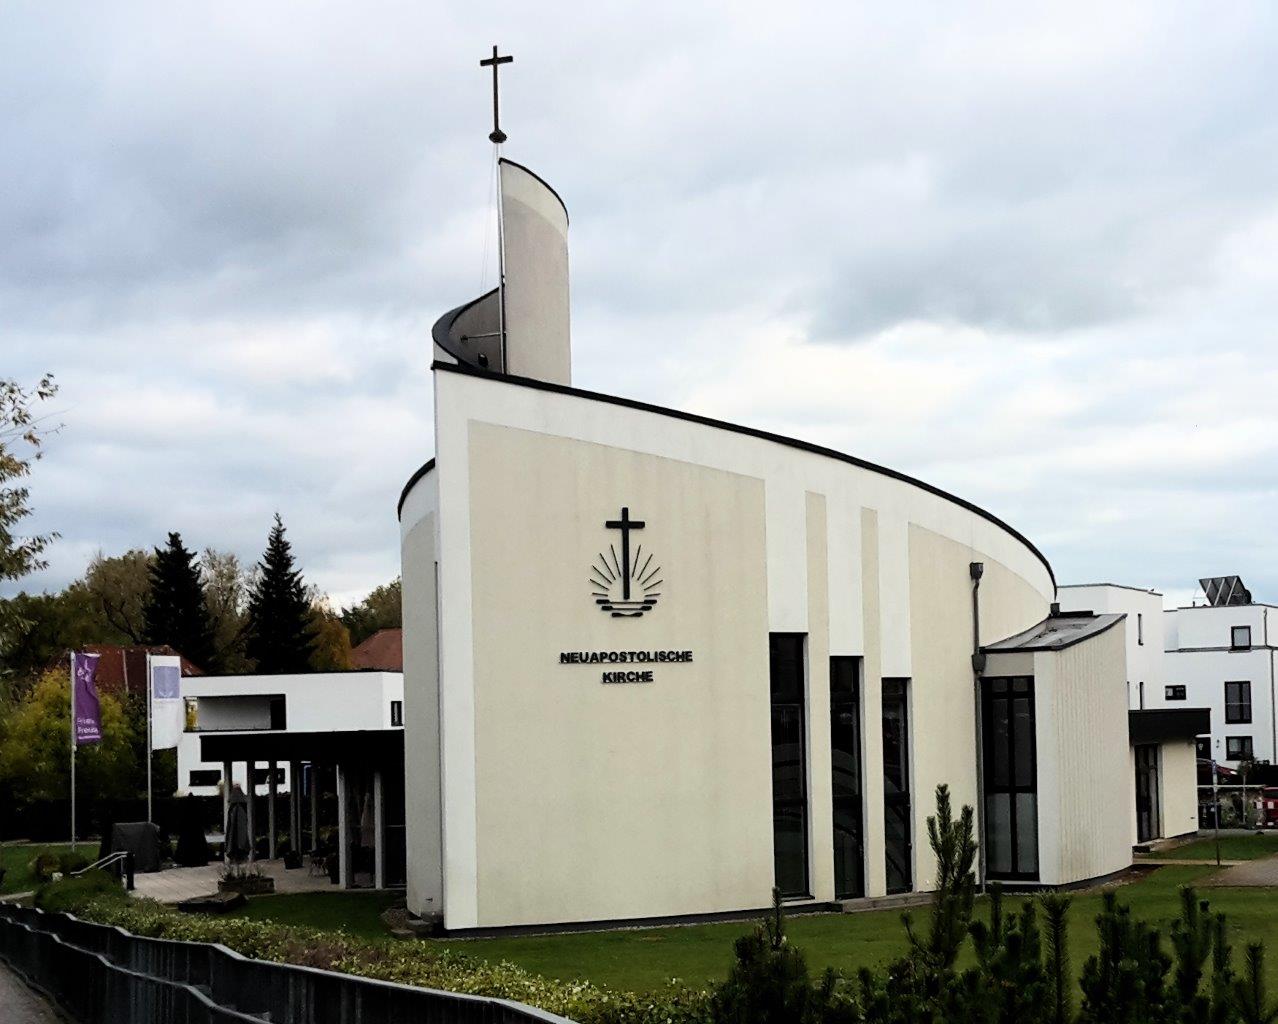 Neuapostolische Kirche in Brandenburg/Havel